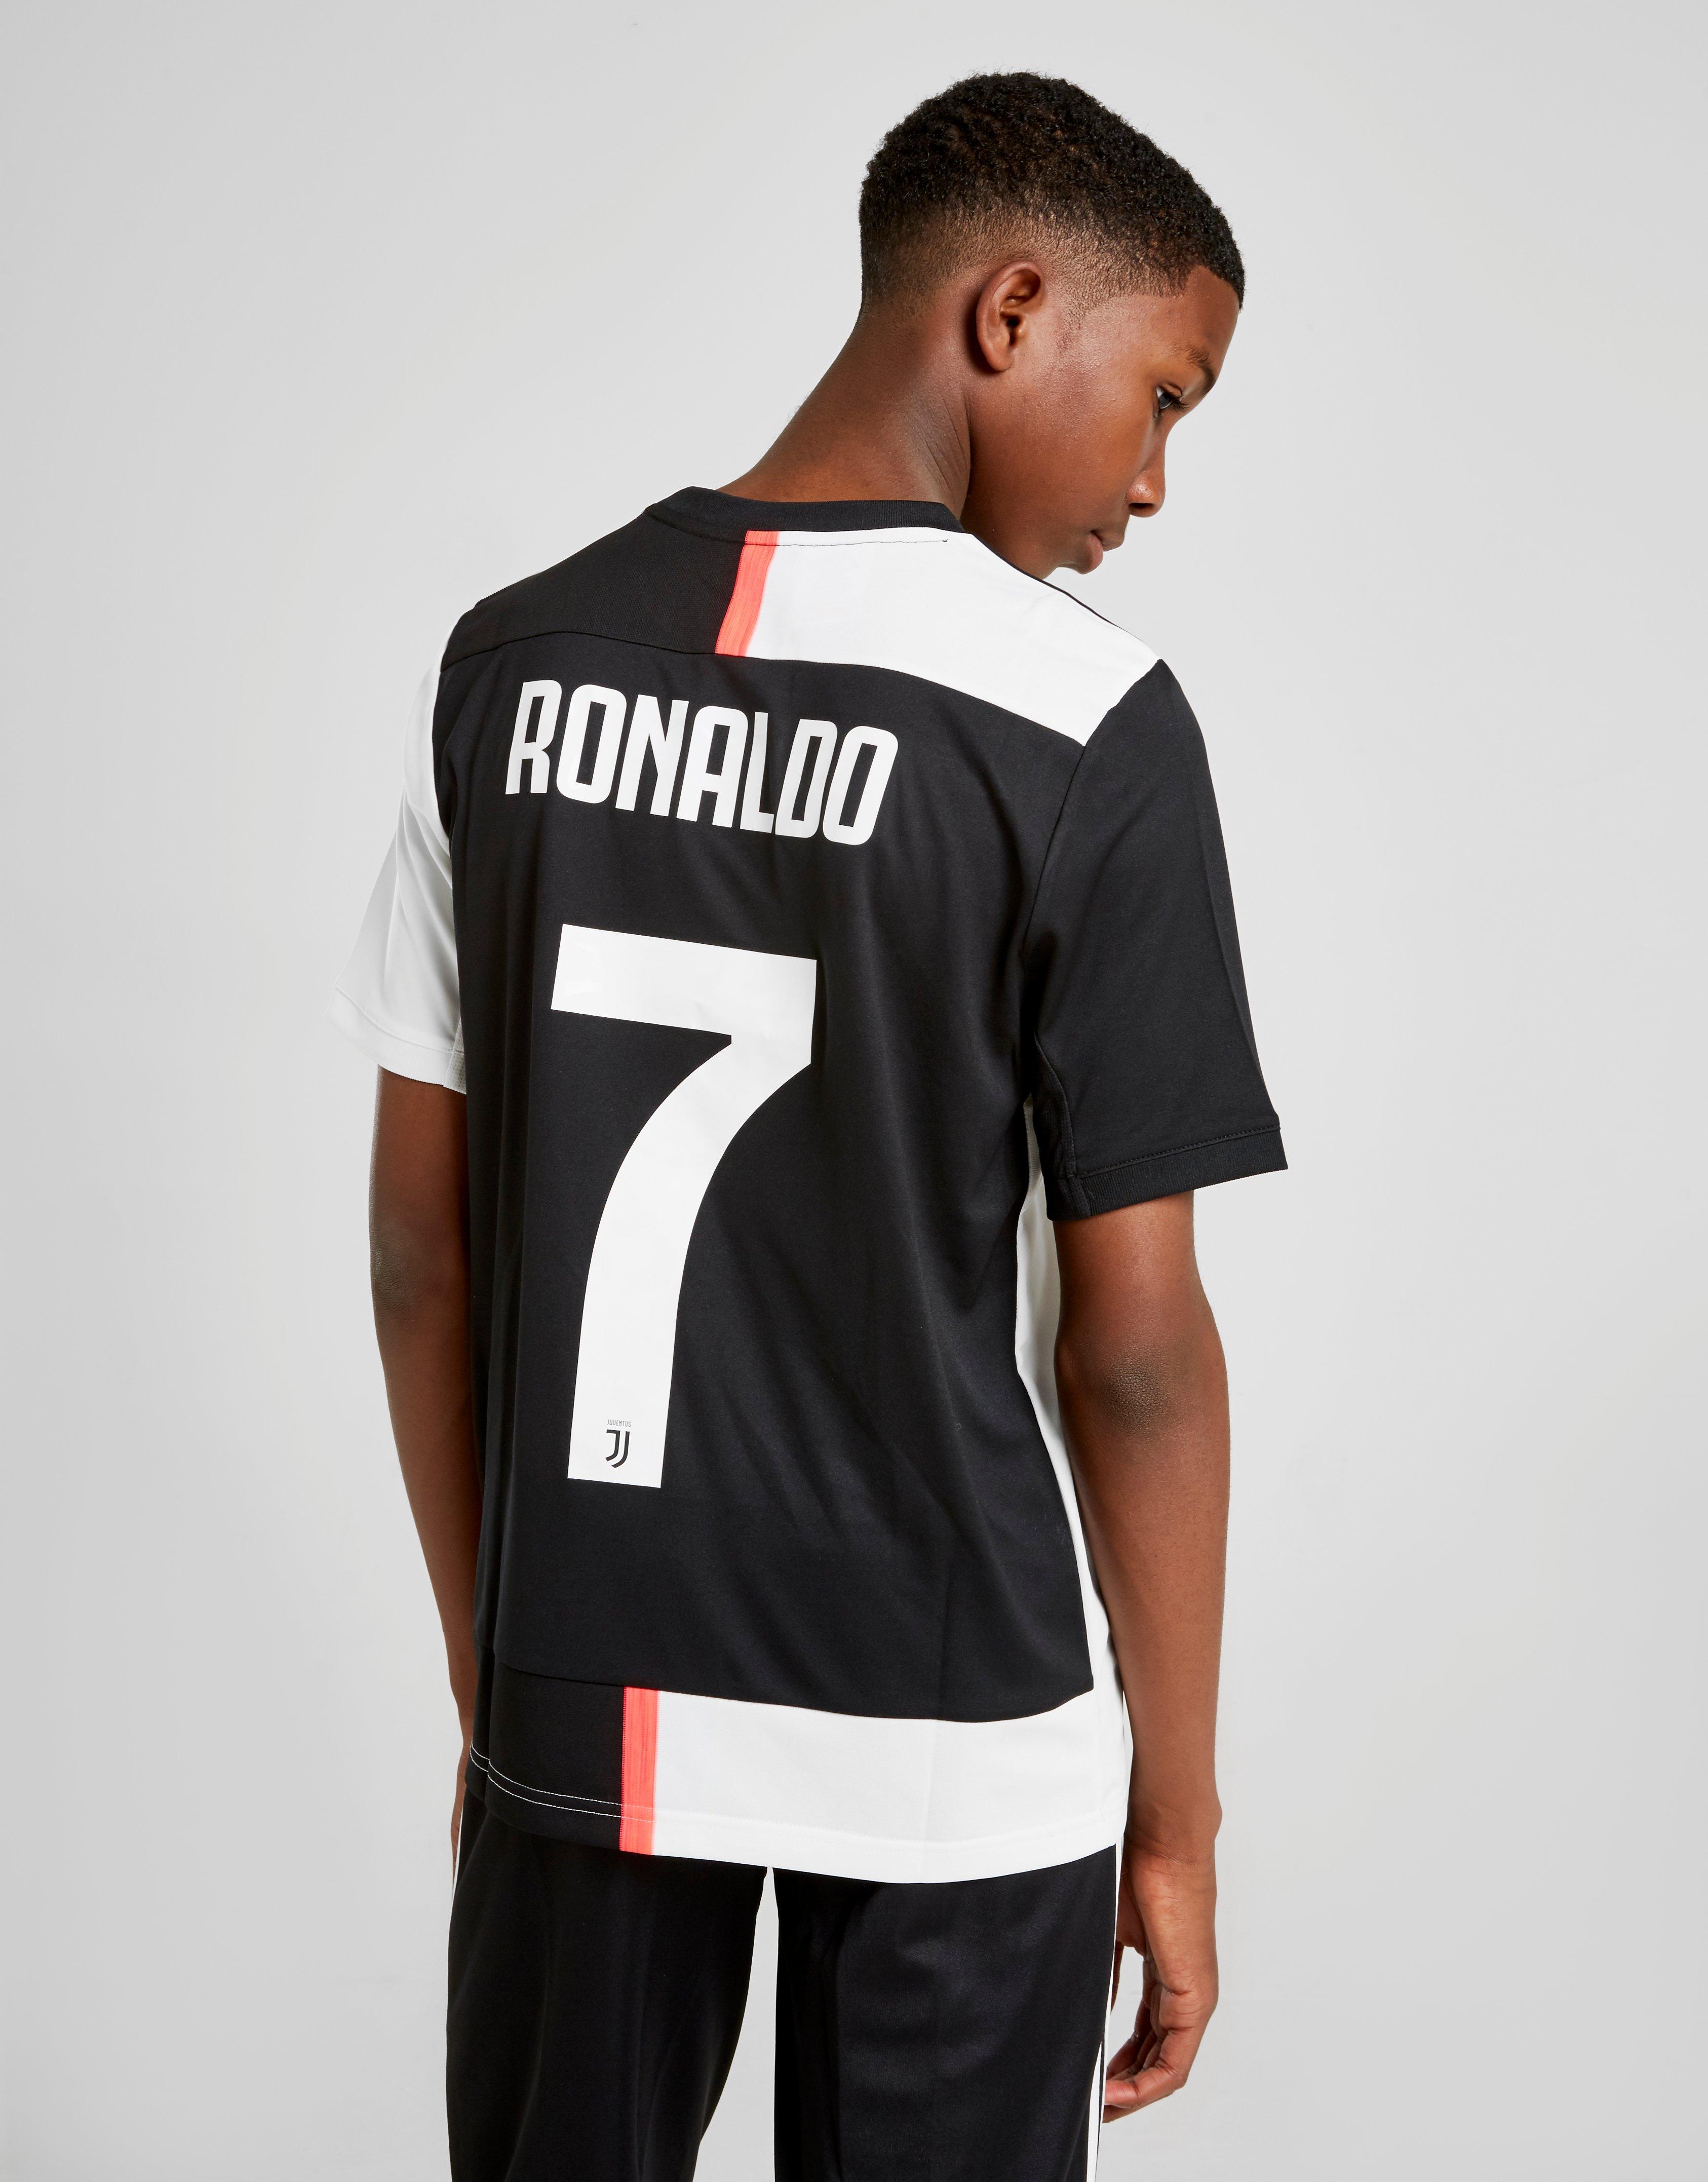 ronaldo shirt junior